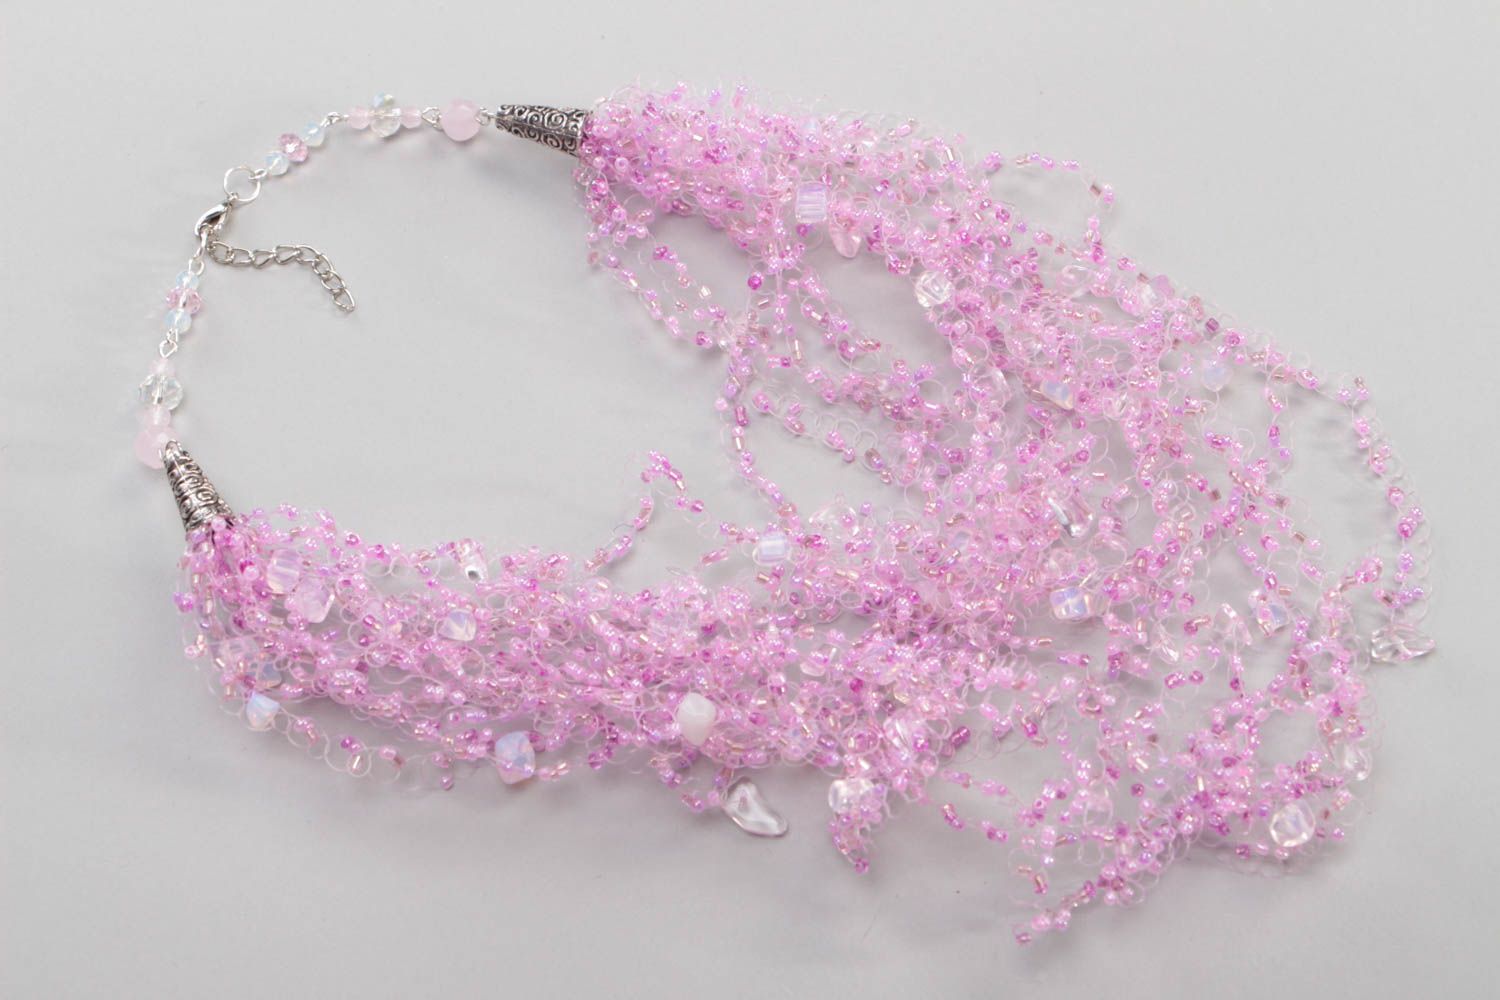 Ожерелье из бисера воздушное колье авторское многорядное розовое хэнд мэйд фото 2